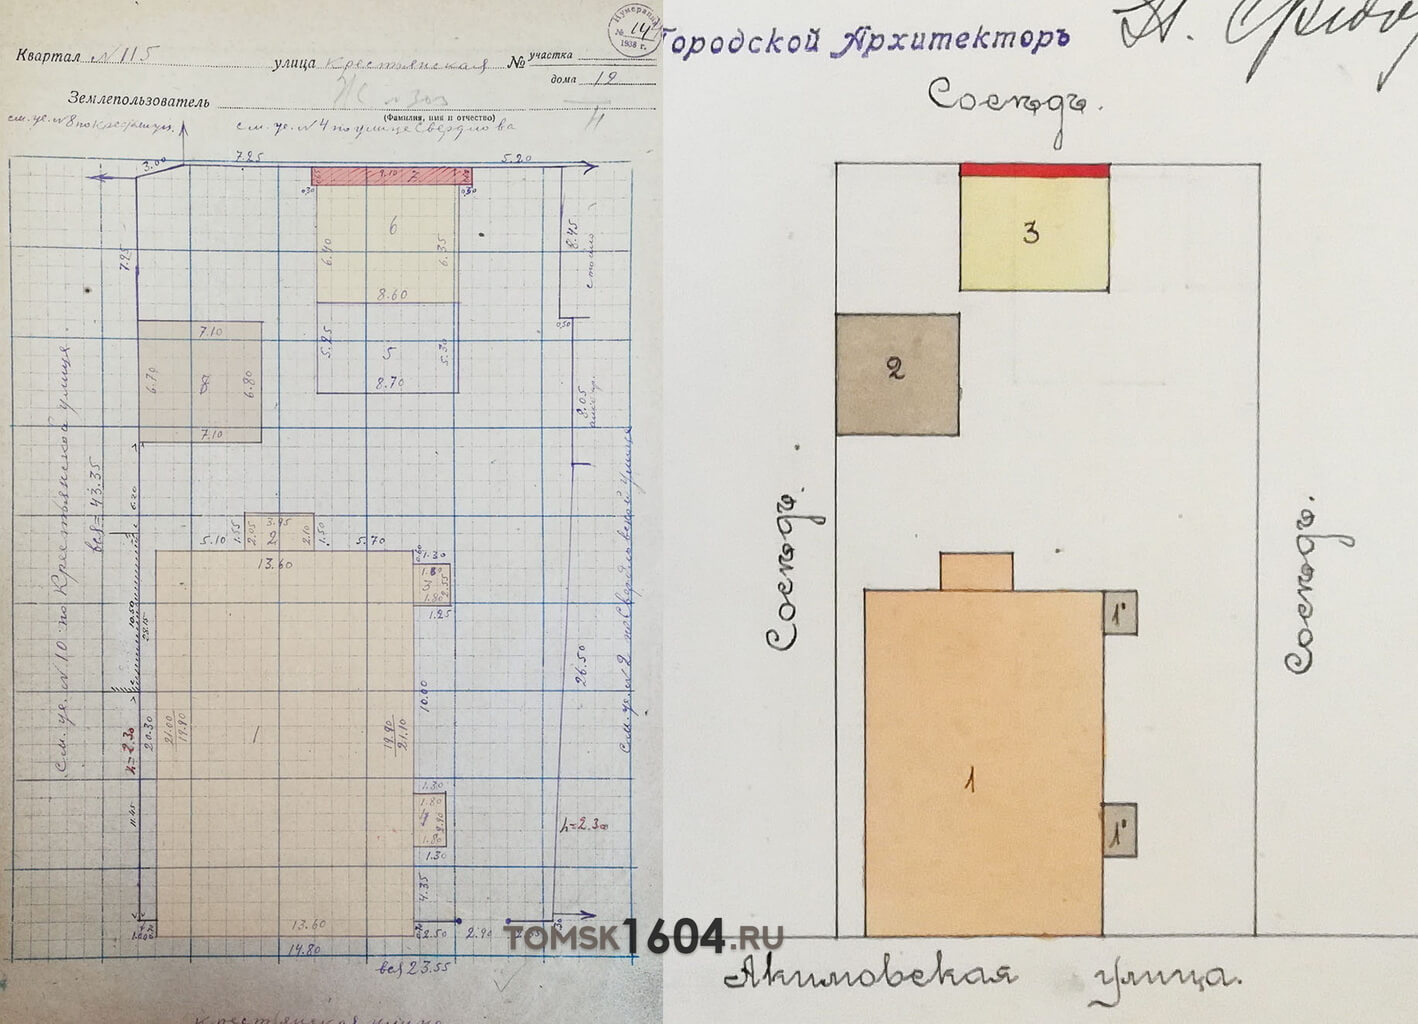 Сравнение плана усадьбы по Крестьянской 12 (14) 1932 года с планом усадьбы по Акимовской 12 1913 года.